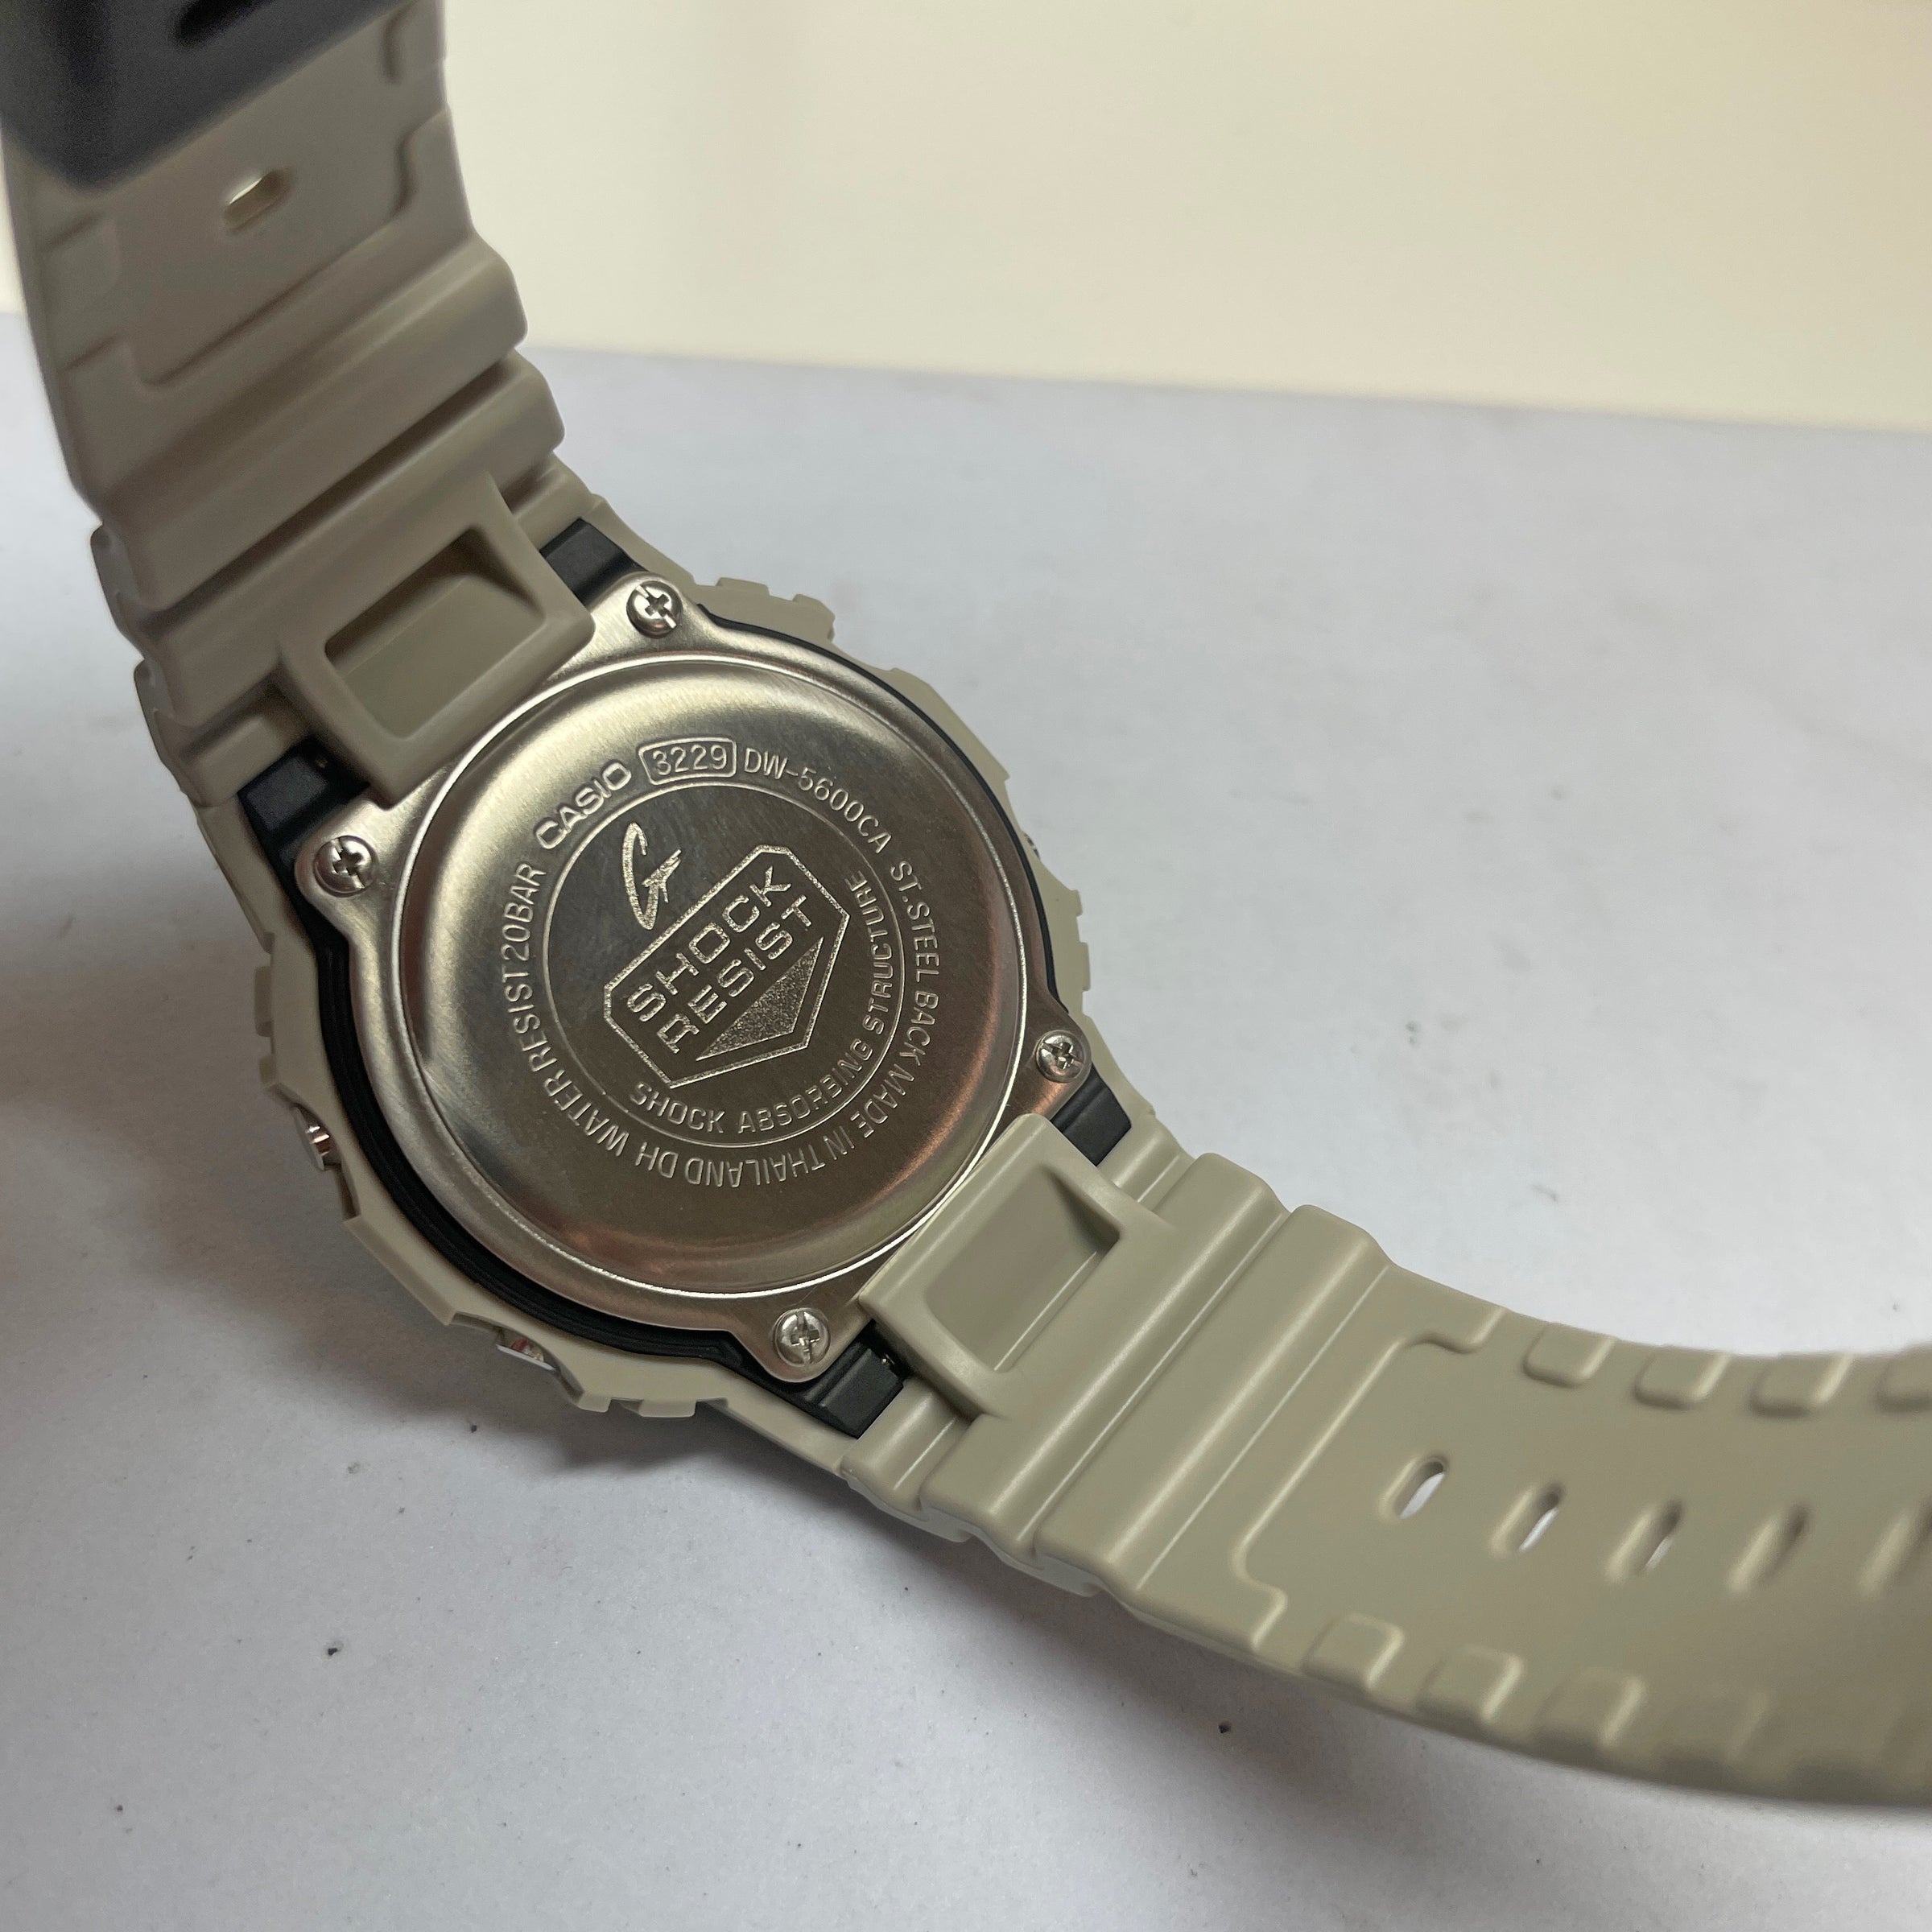 DW5600CA-8 CASIO Watch – Utility G-SHOCK Light Grey Camo Gray NAGI Camouflage